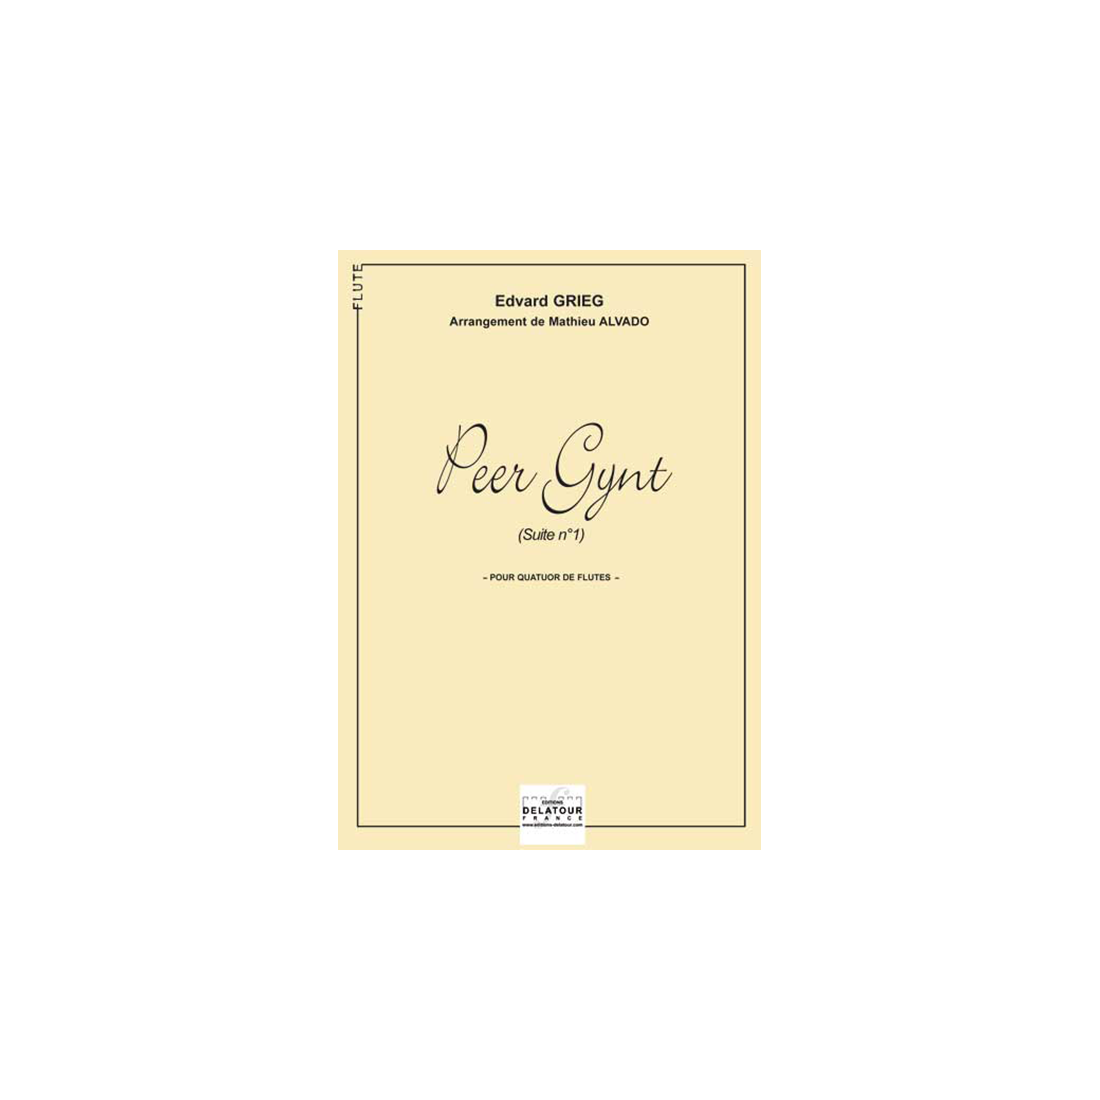 Peer Gynt Suite N° 1 für Flötenquartett